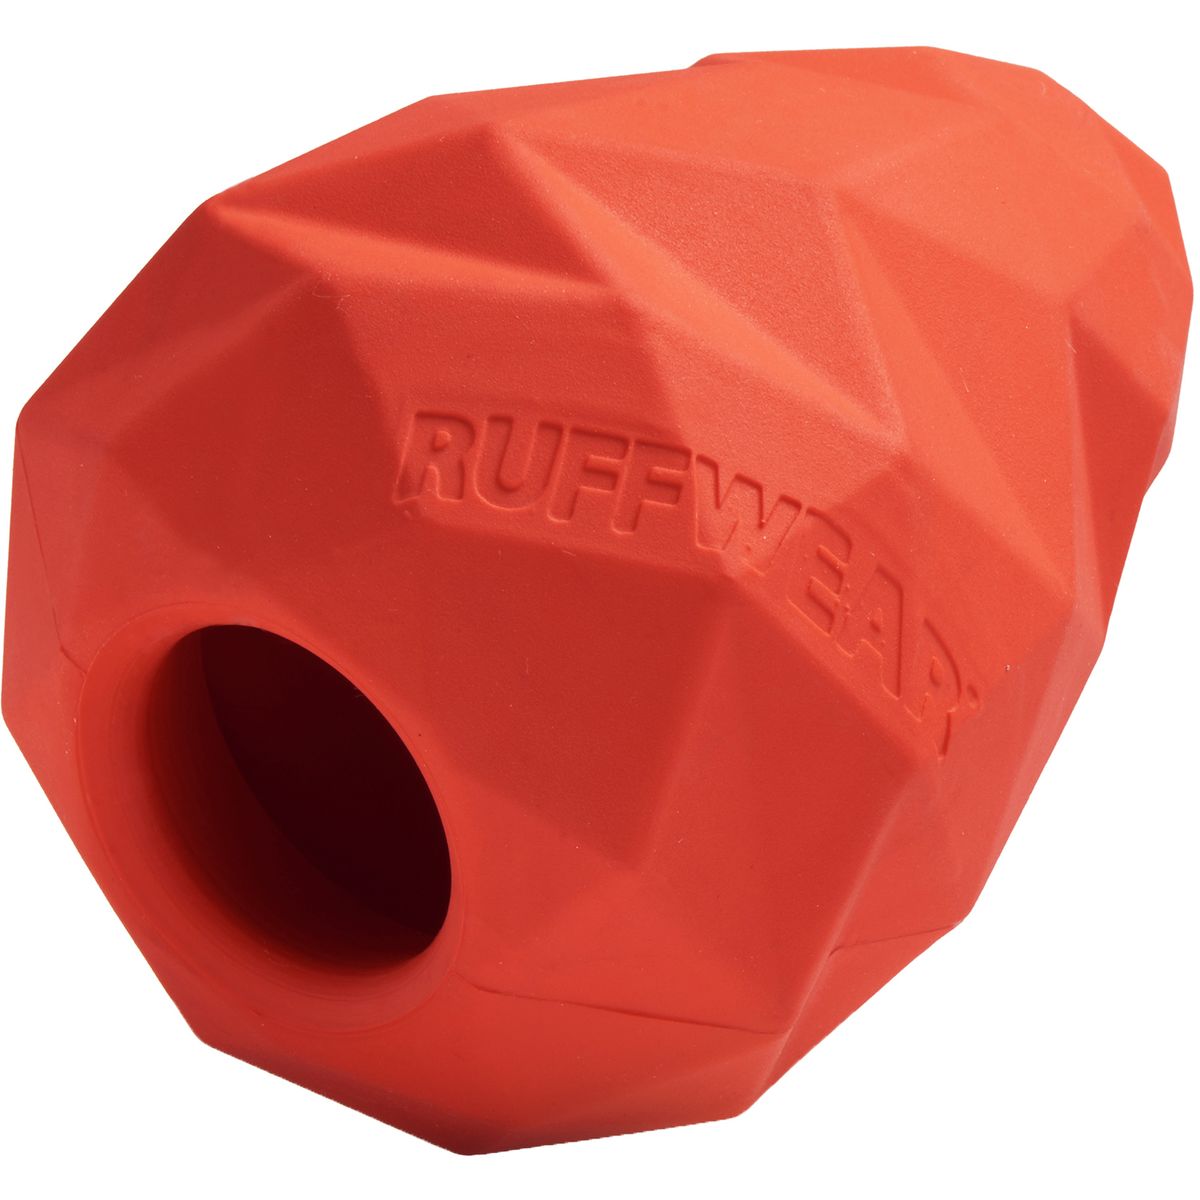 Ruffwear Gnawt-A-Cone Ruffwear